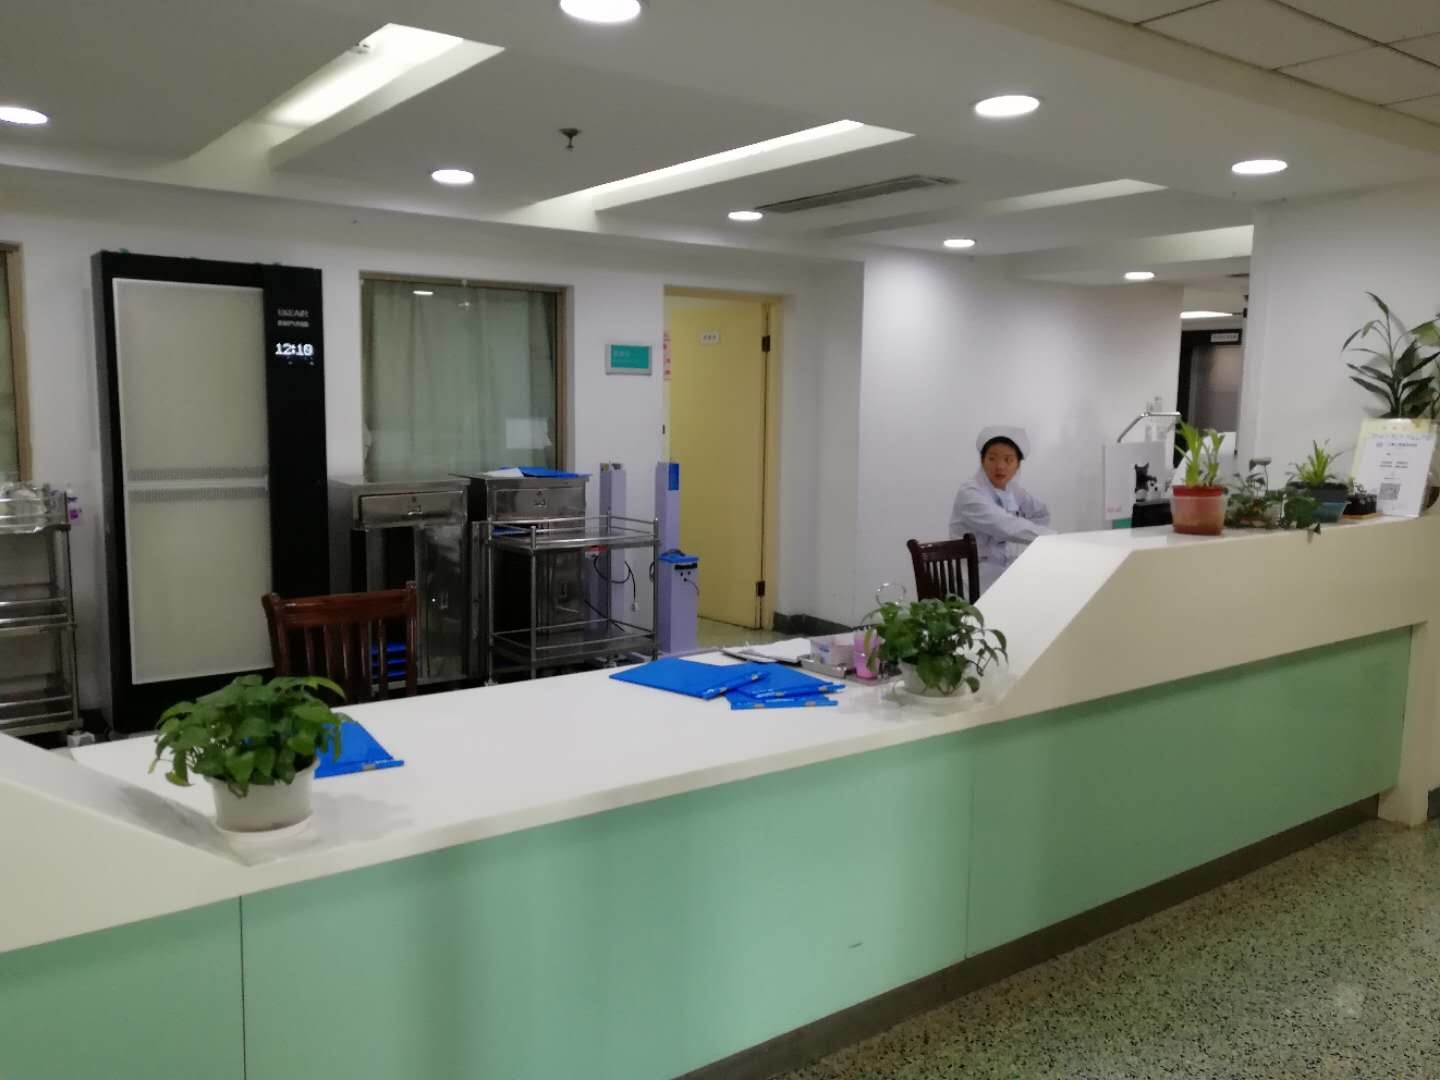 Laatste bedrijfscasus over Renji Hospital van Shanghai Jiao Tong University